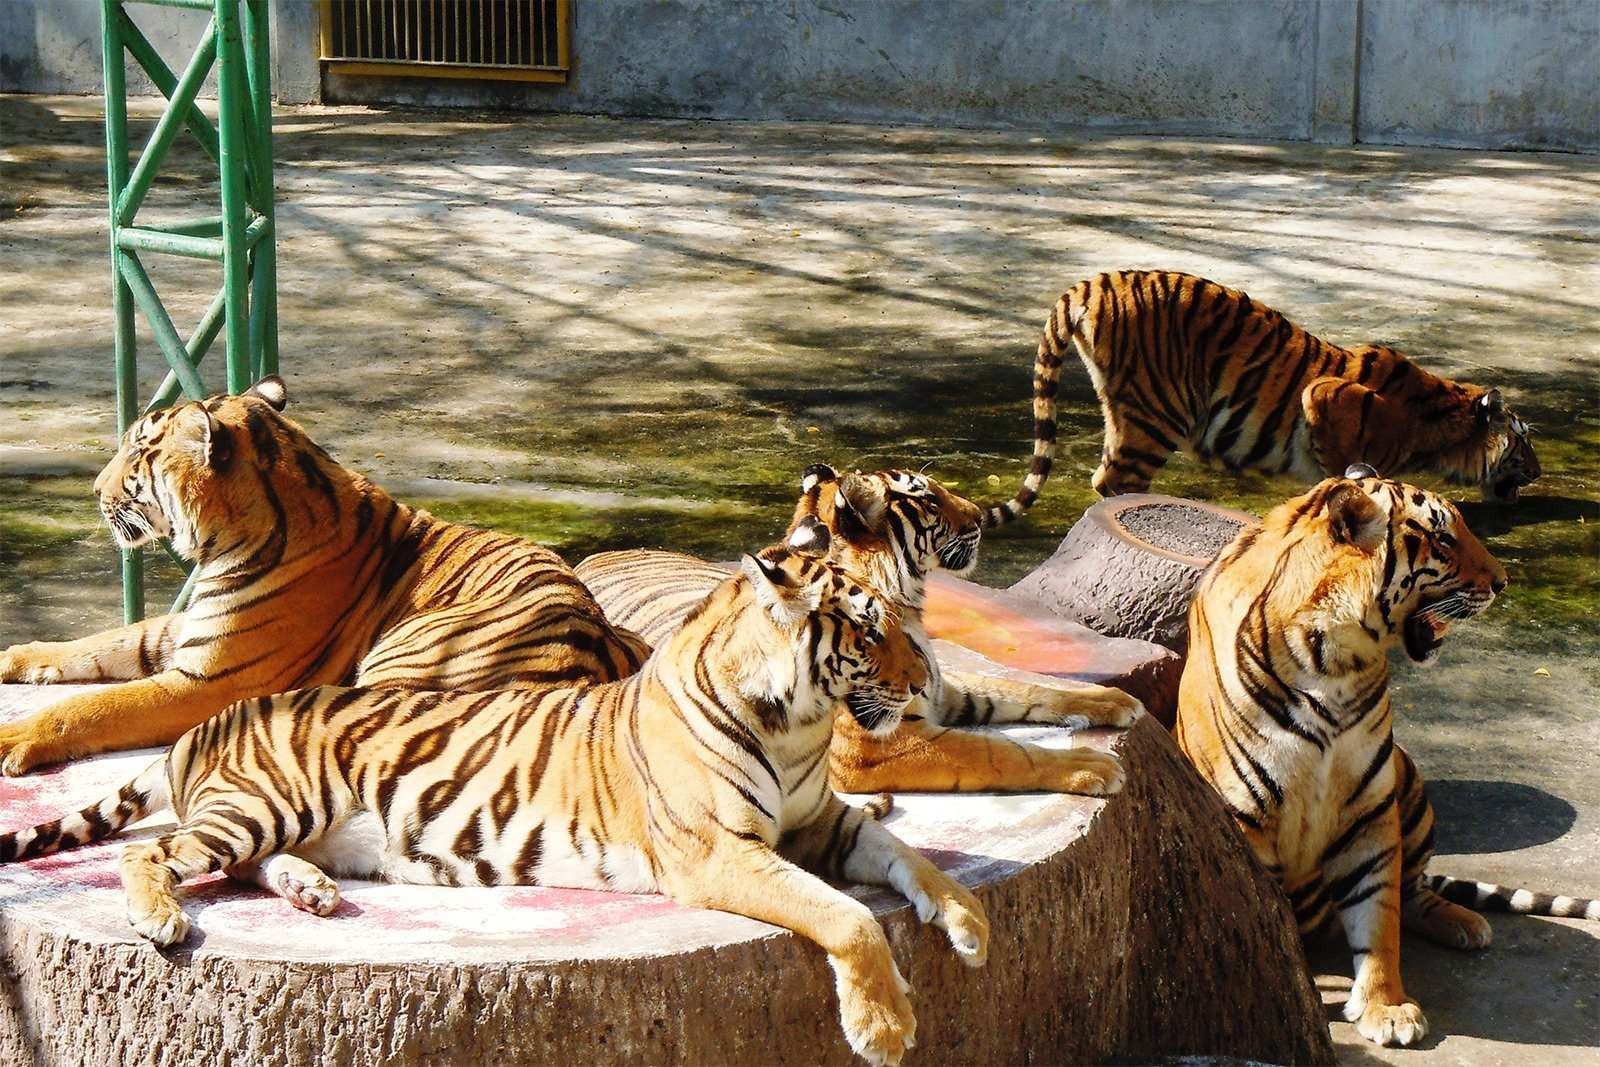 Hành trình tìm hiểu và khám phá công viên Sriracha Tiger Zoo - ảnh 10